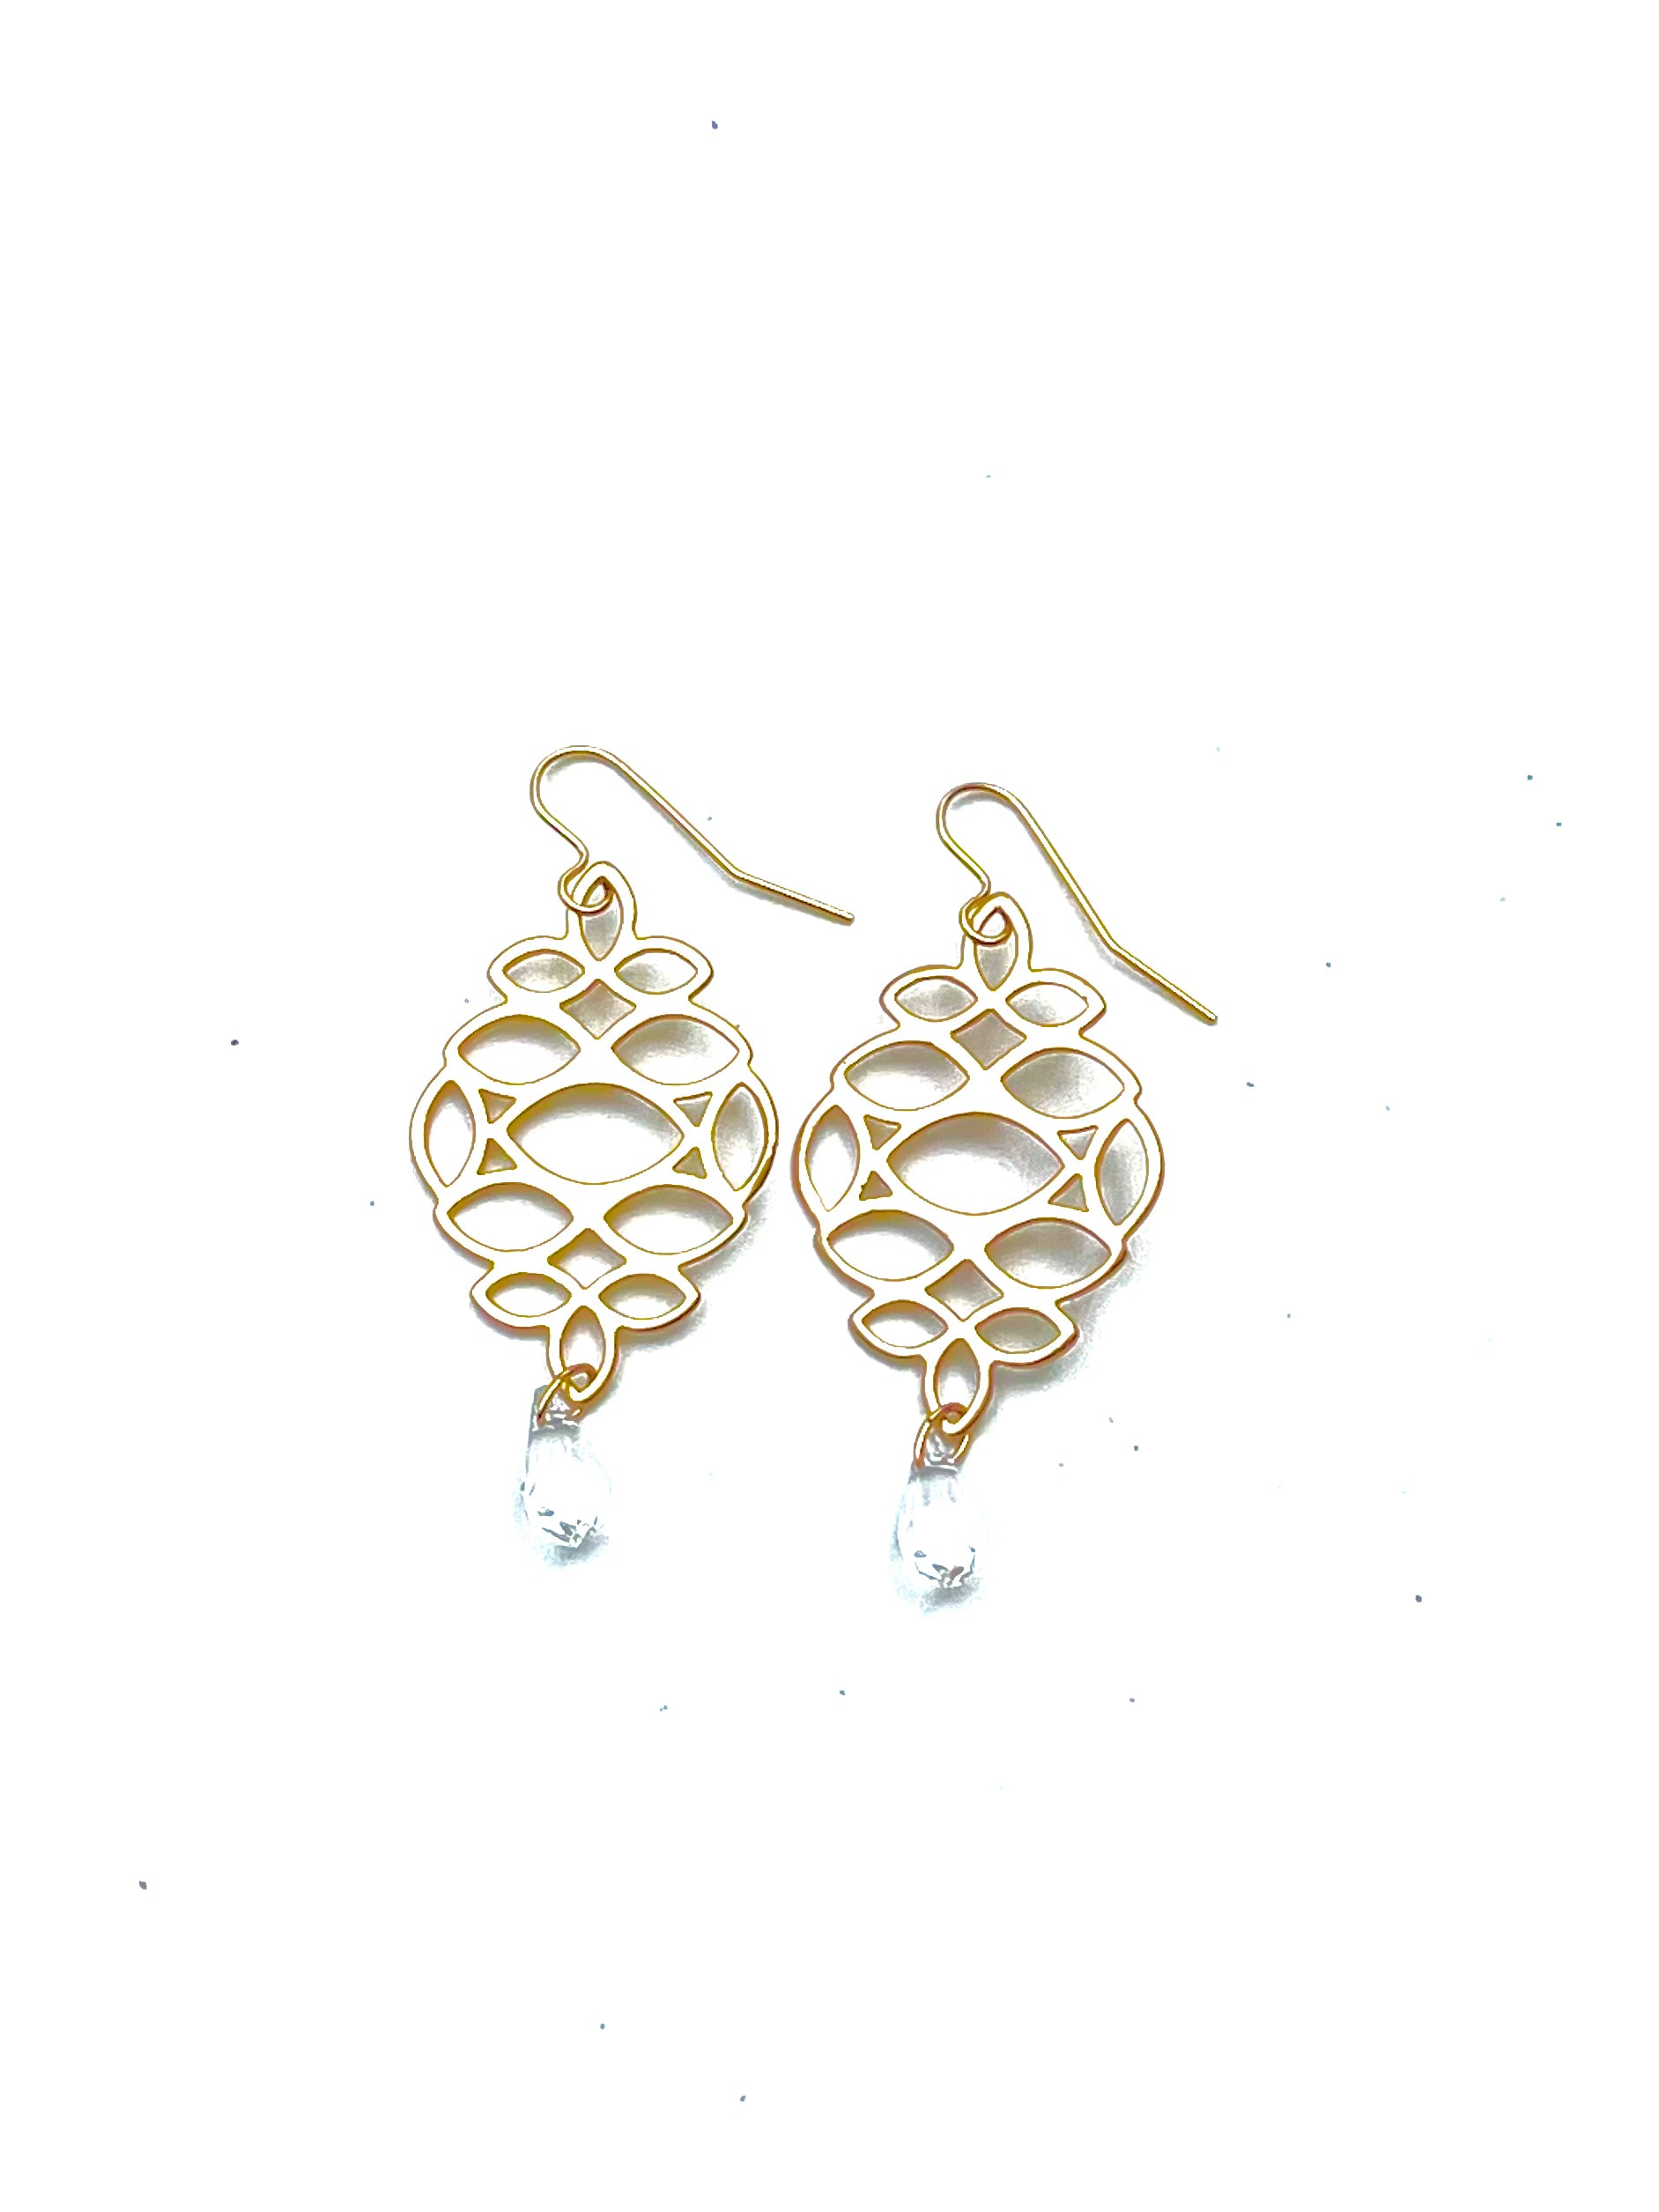 Ivy - earrings with Swarovski crystal drop